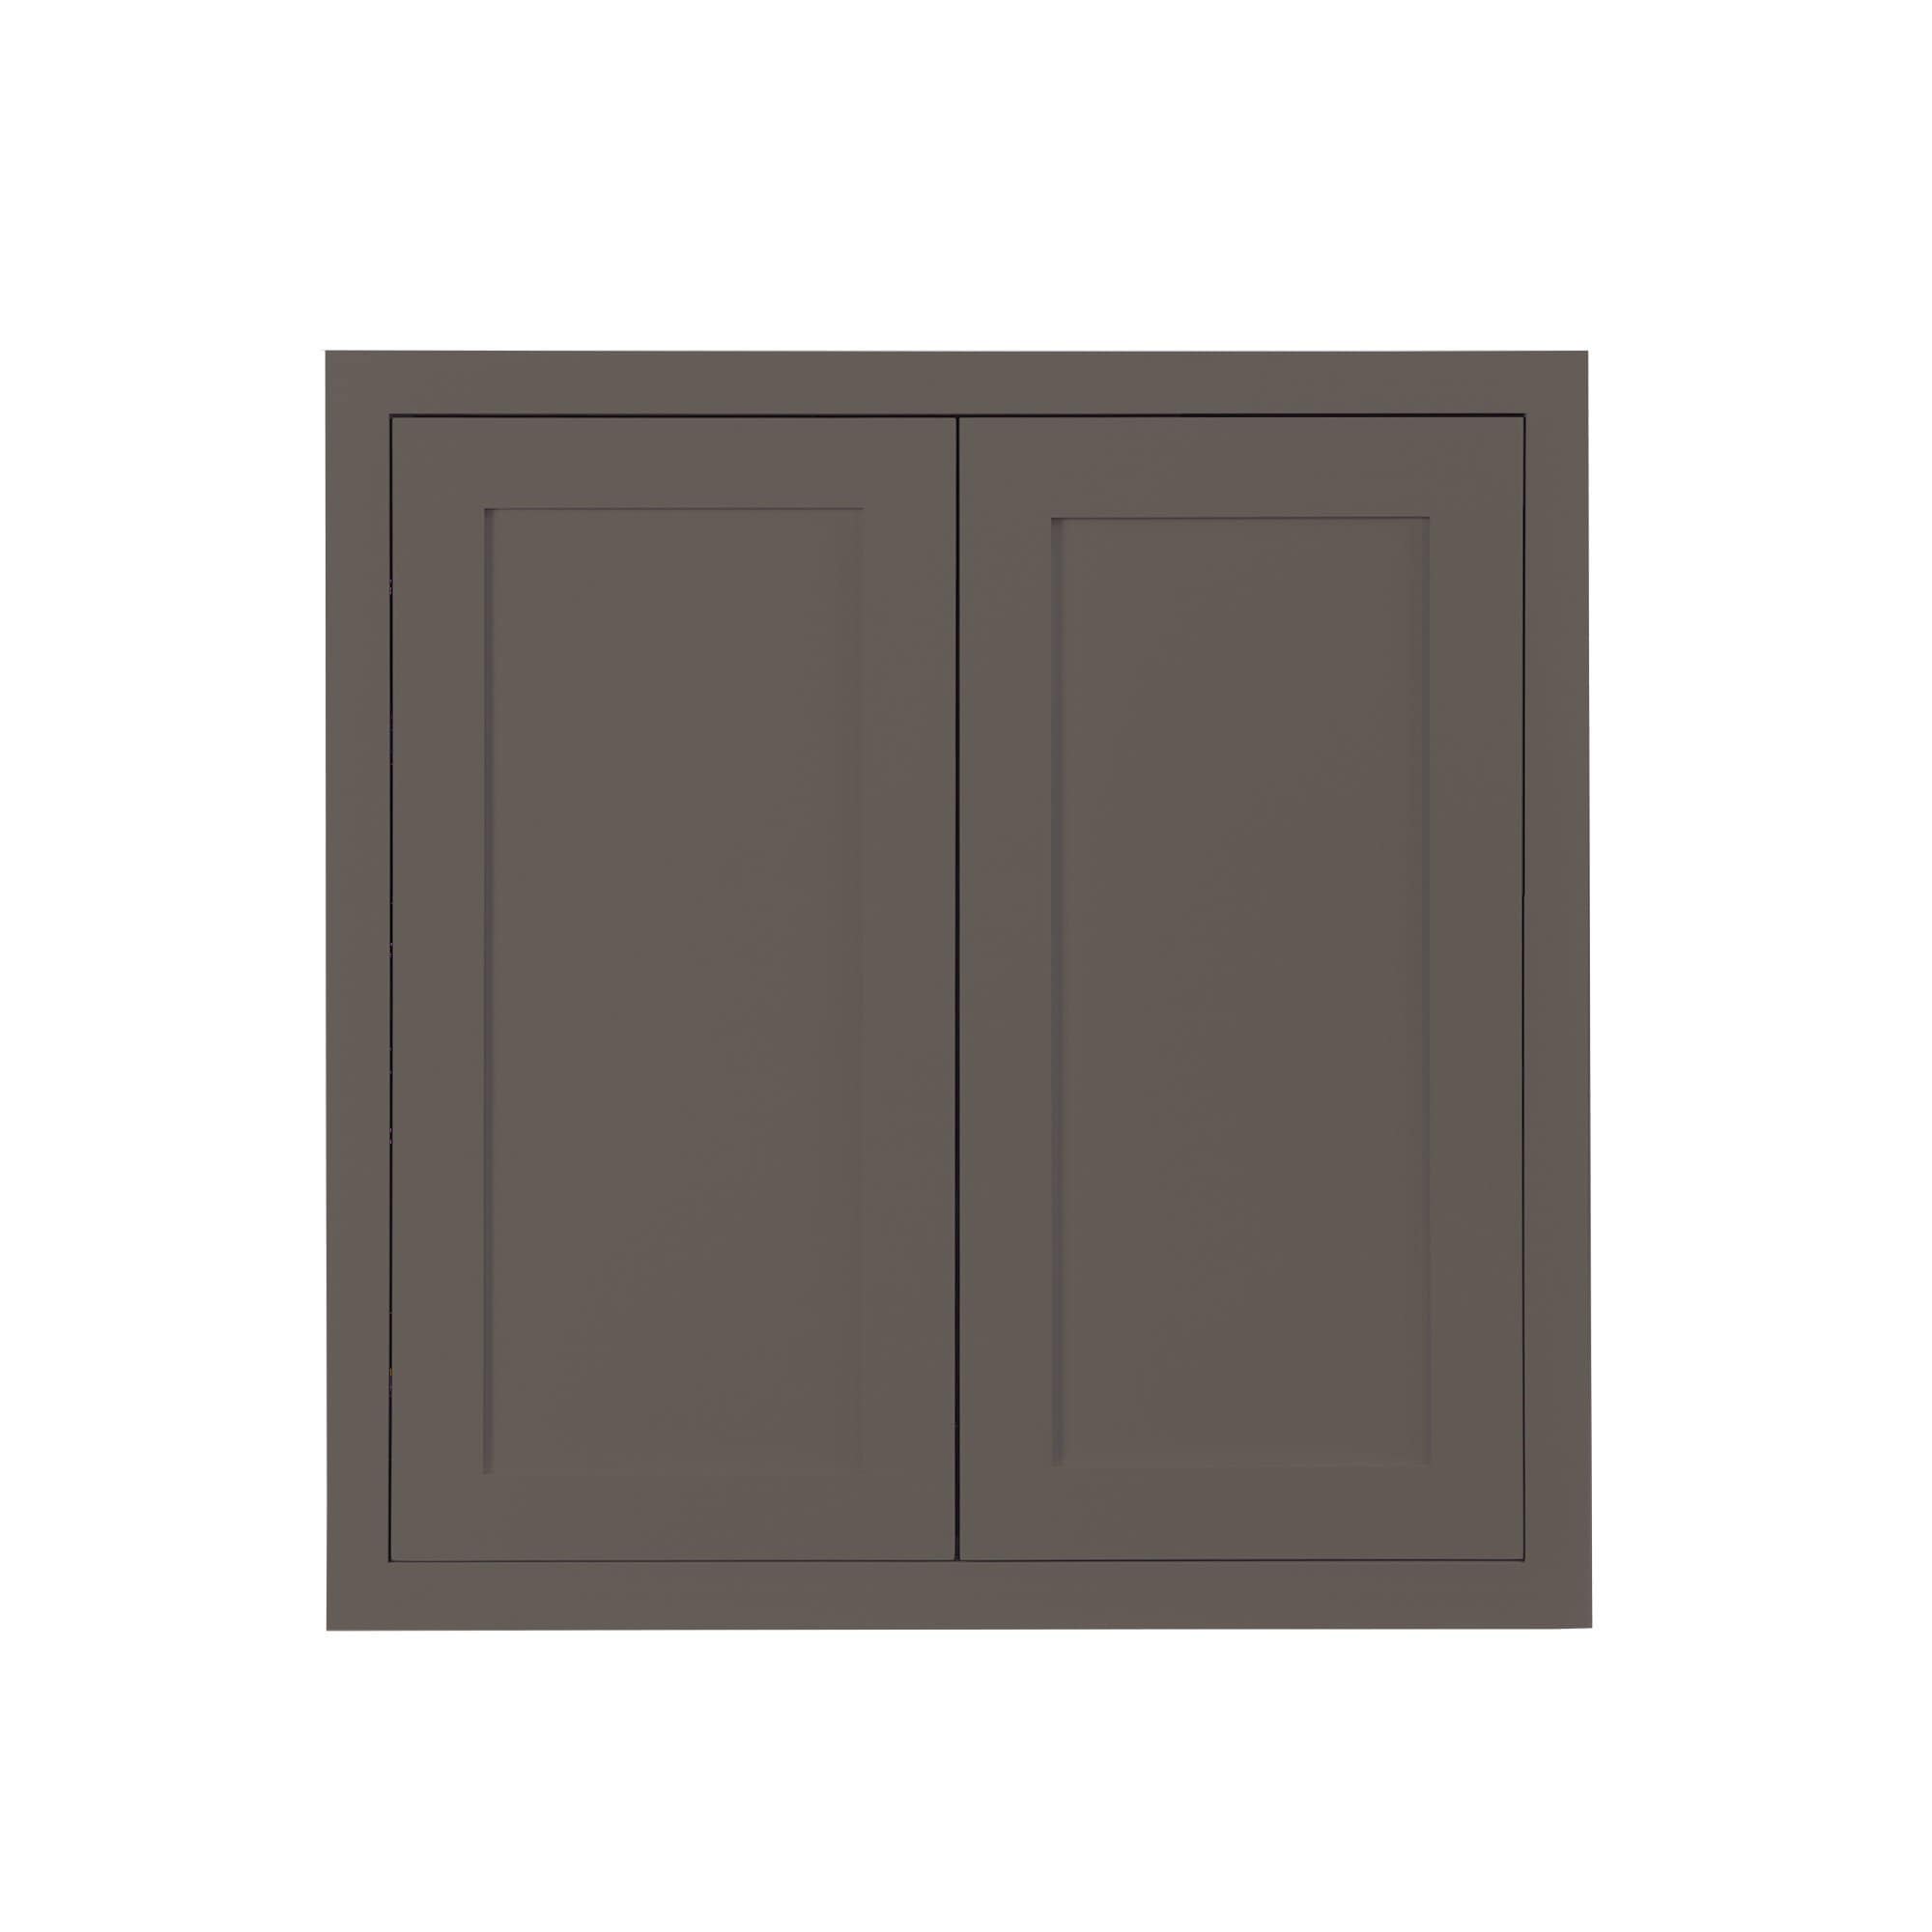 30" Tall Dark Gray Inset Shaker Wall Cabinet - Double Door 24", 27", 30", 33" & 36" Wide